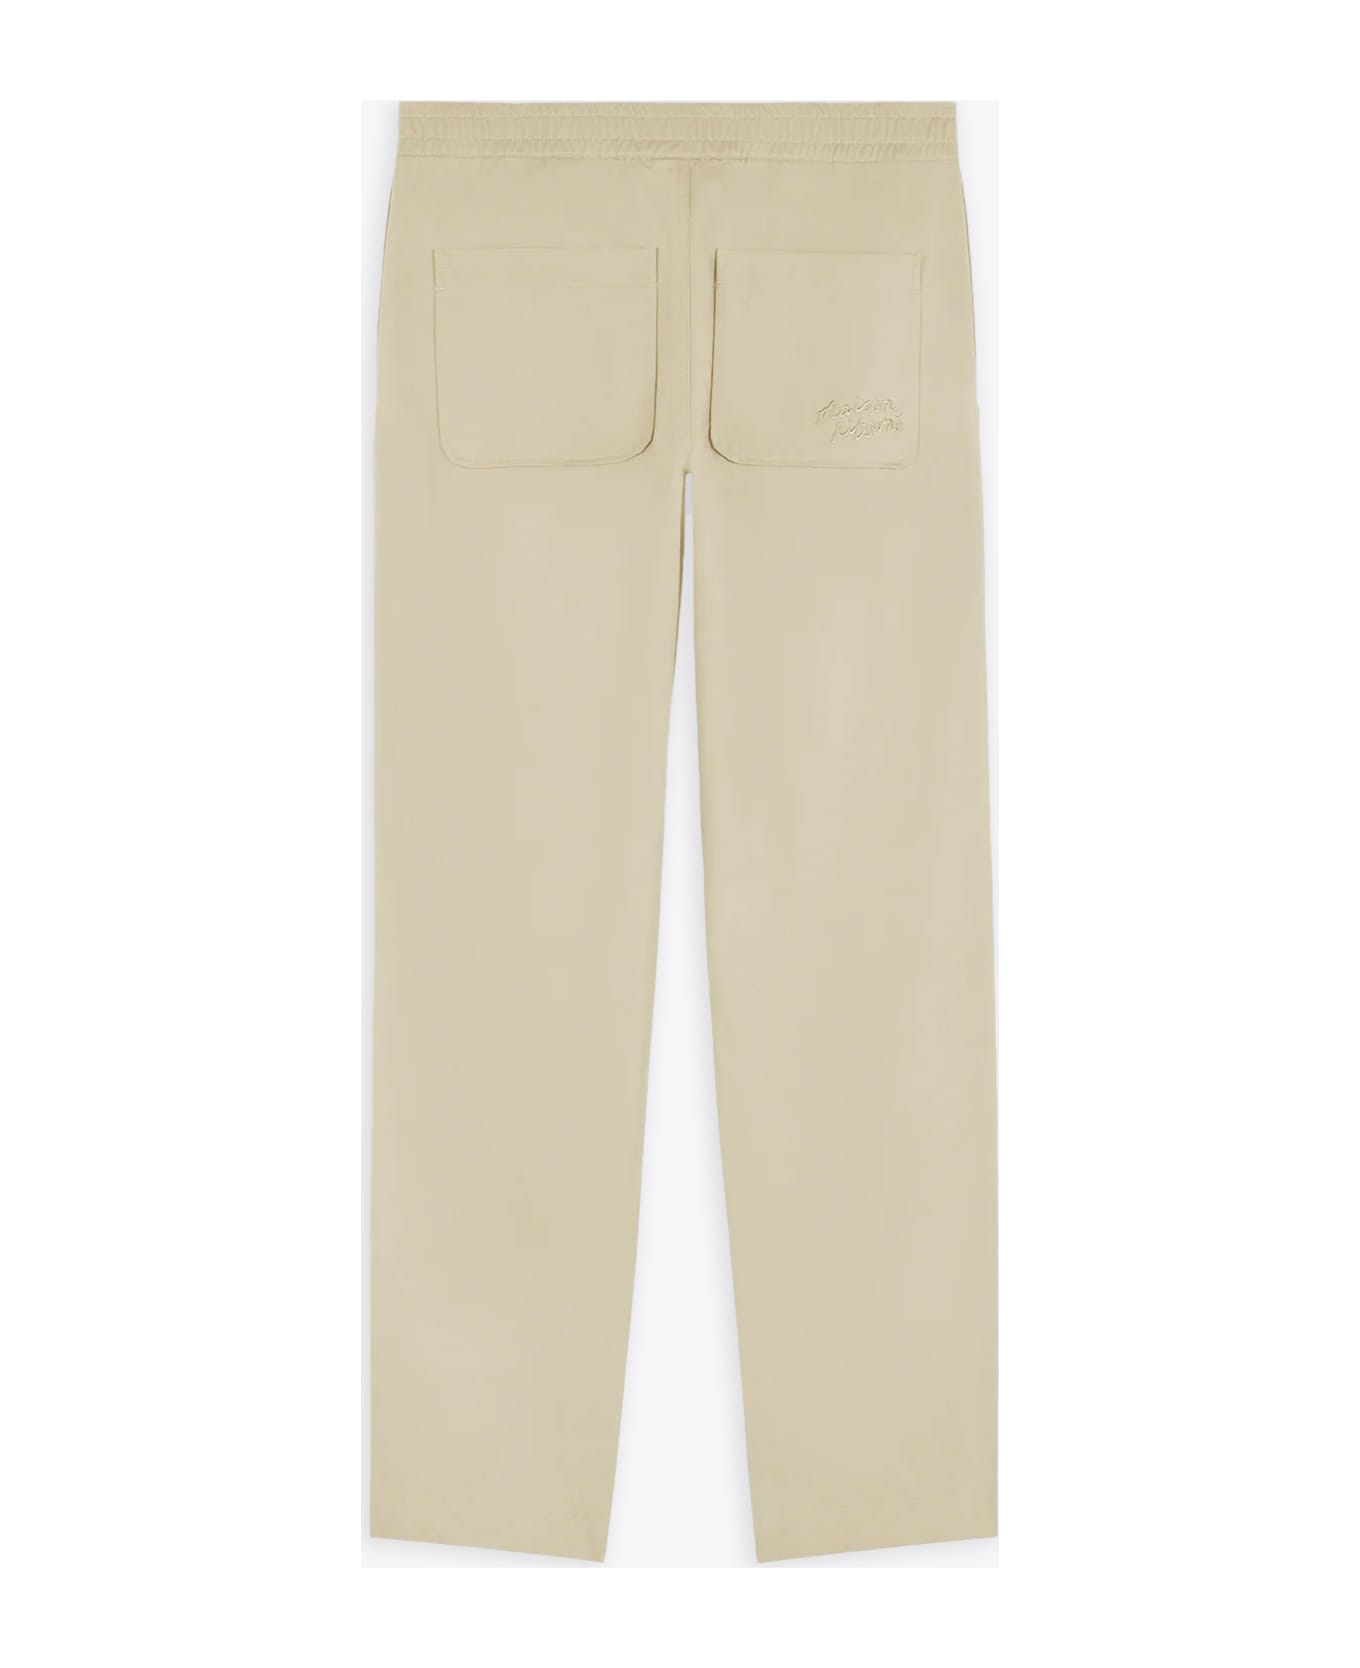 Maison Kitsuné Casual Pants Light beige cotton pants with elastic waistband - Casual Pants - Beige